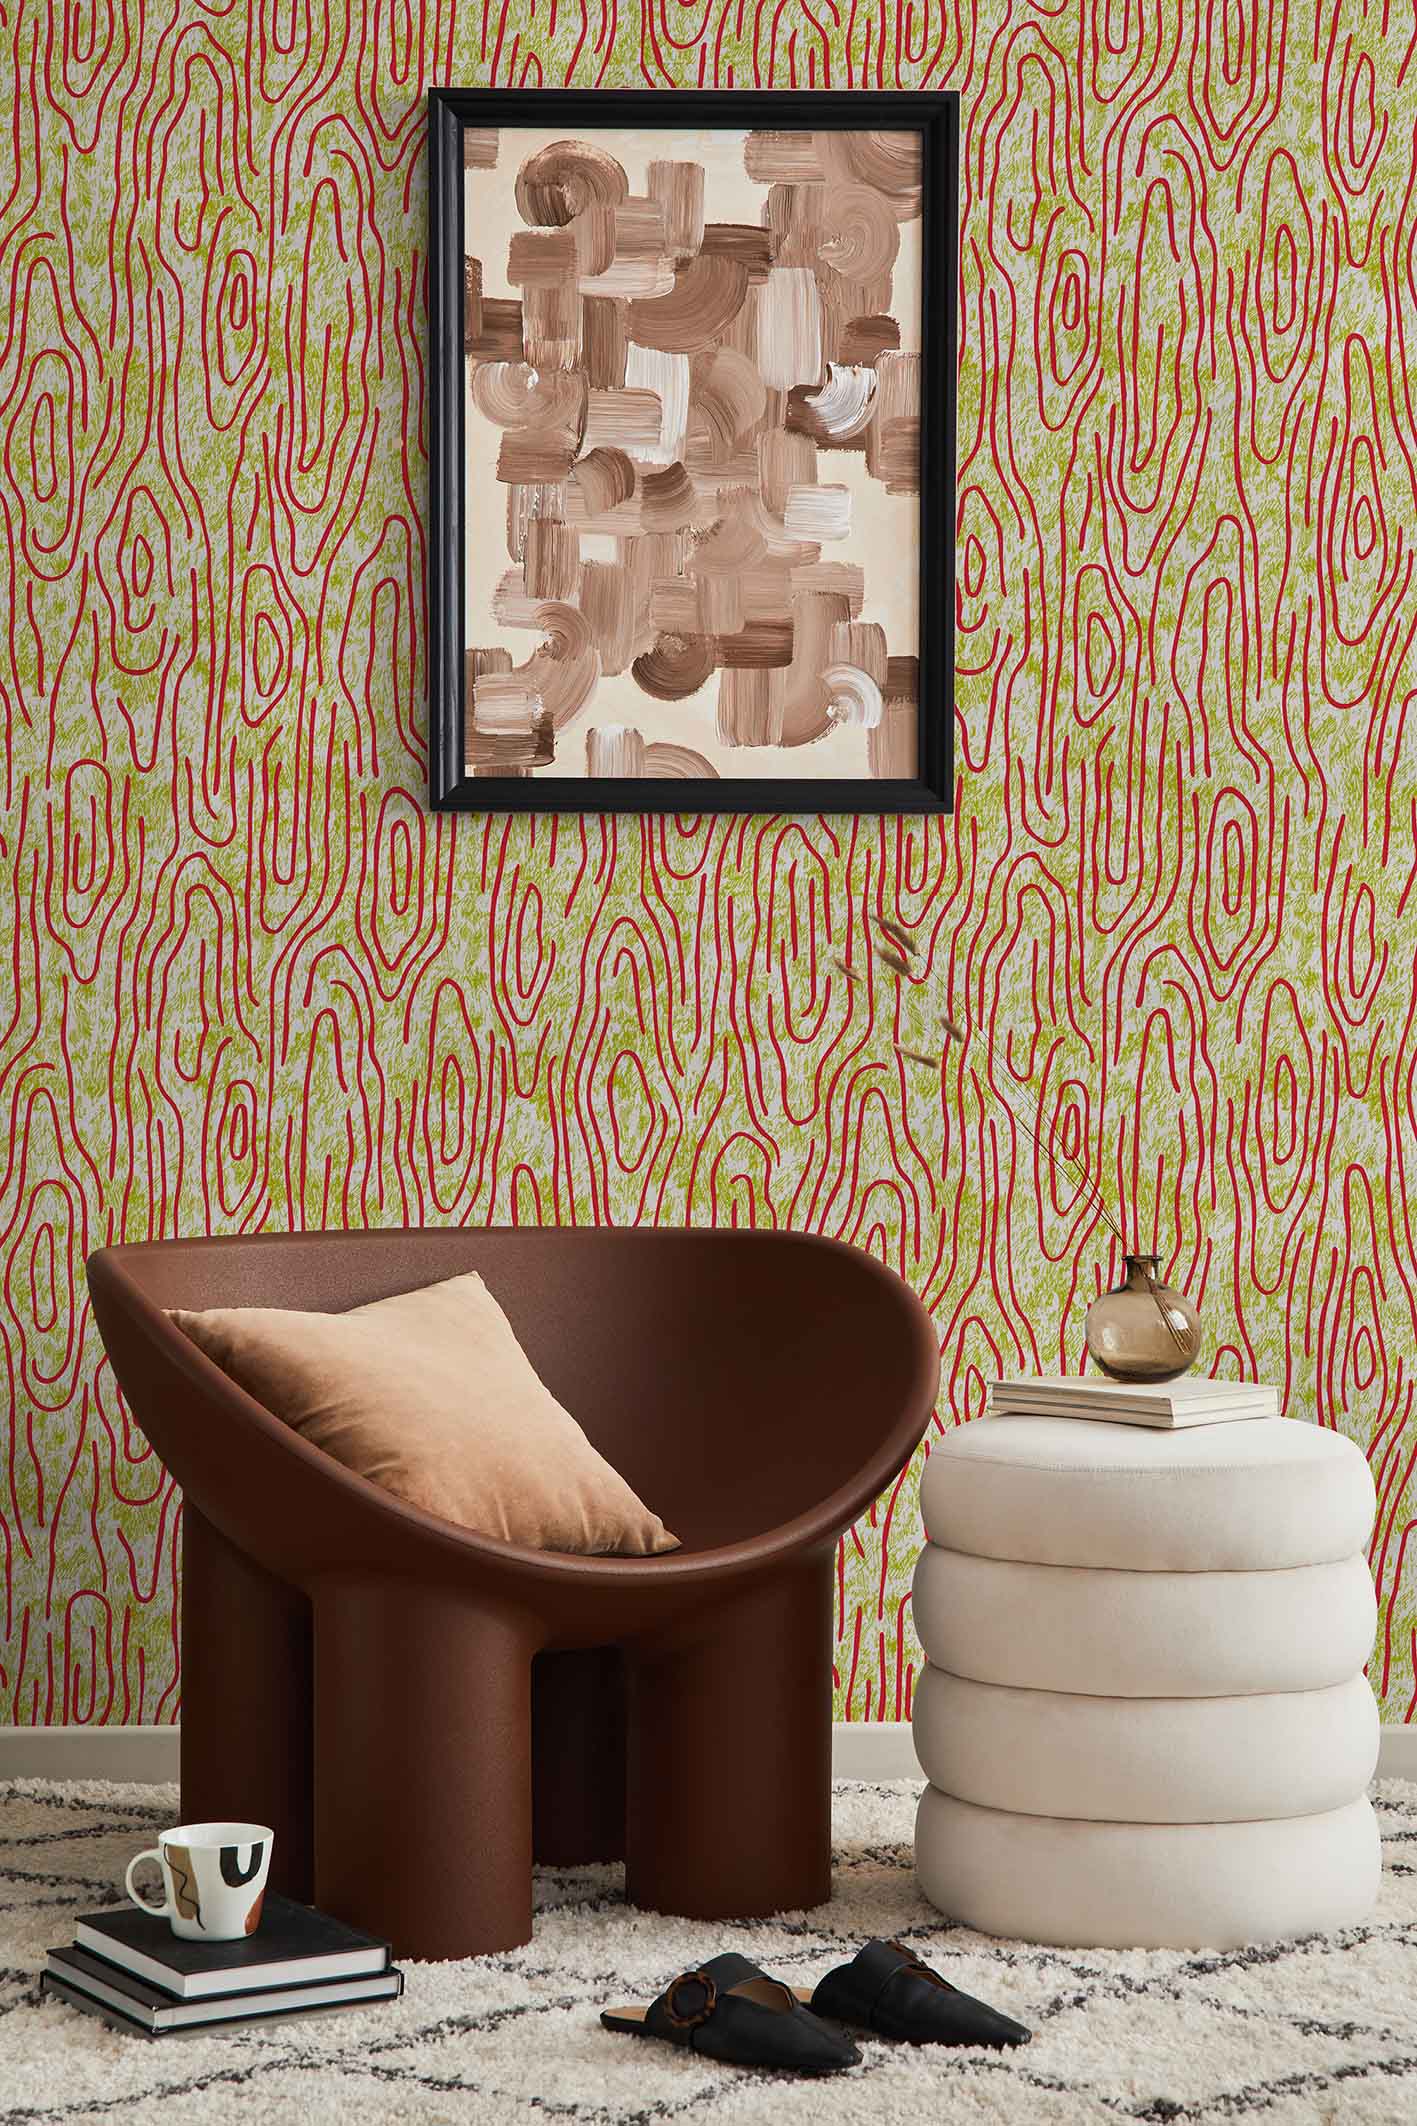 MaVoix-wallpaper-Vampa-incendio-by-Studio-Lievito-pattern-Collezione-Essenziali-vertical